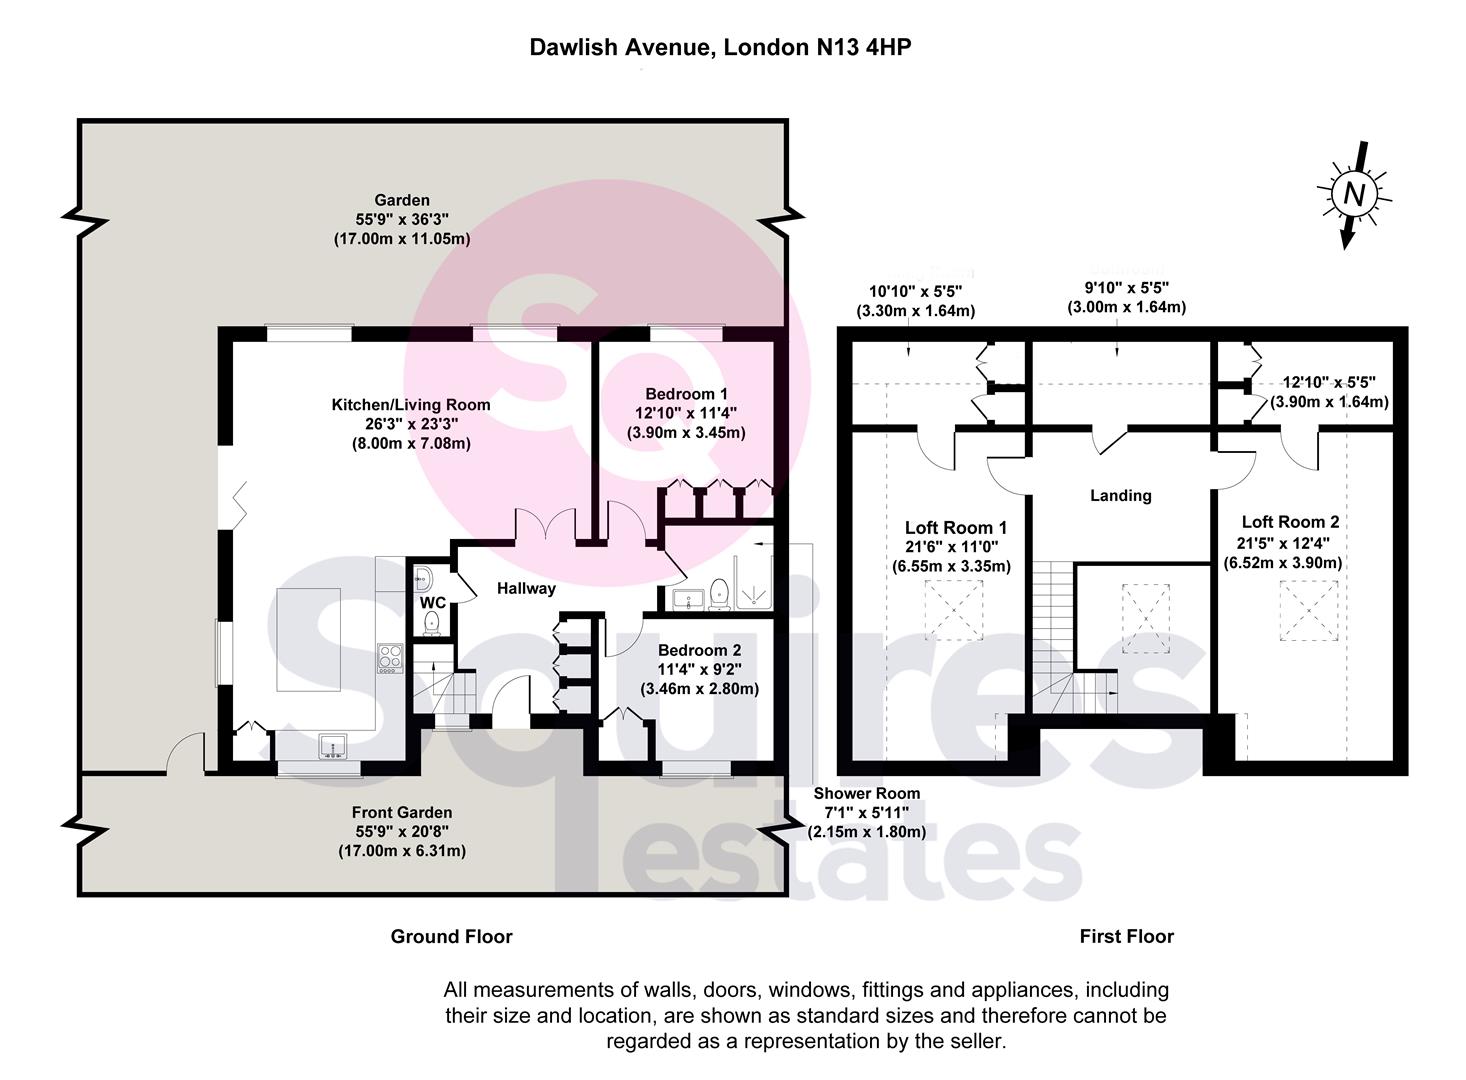 Floorplan for Dawlish Avenue, London